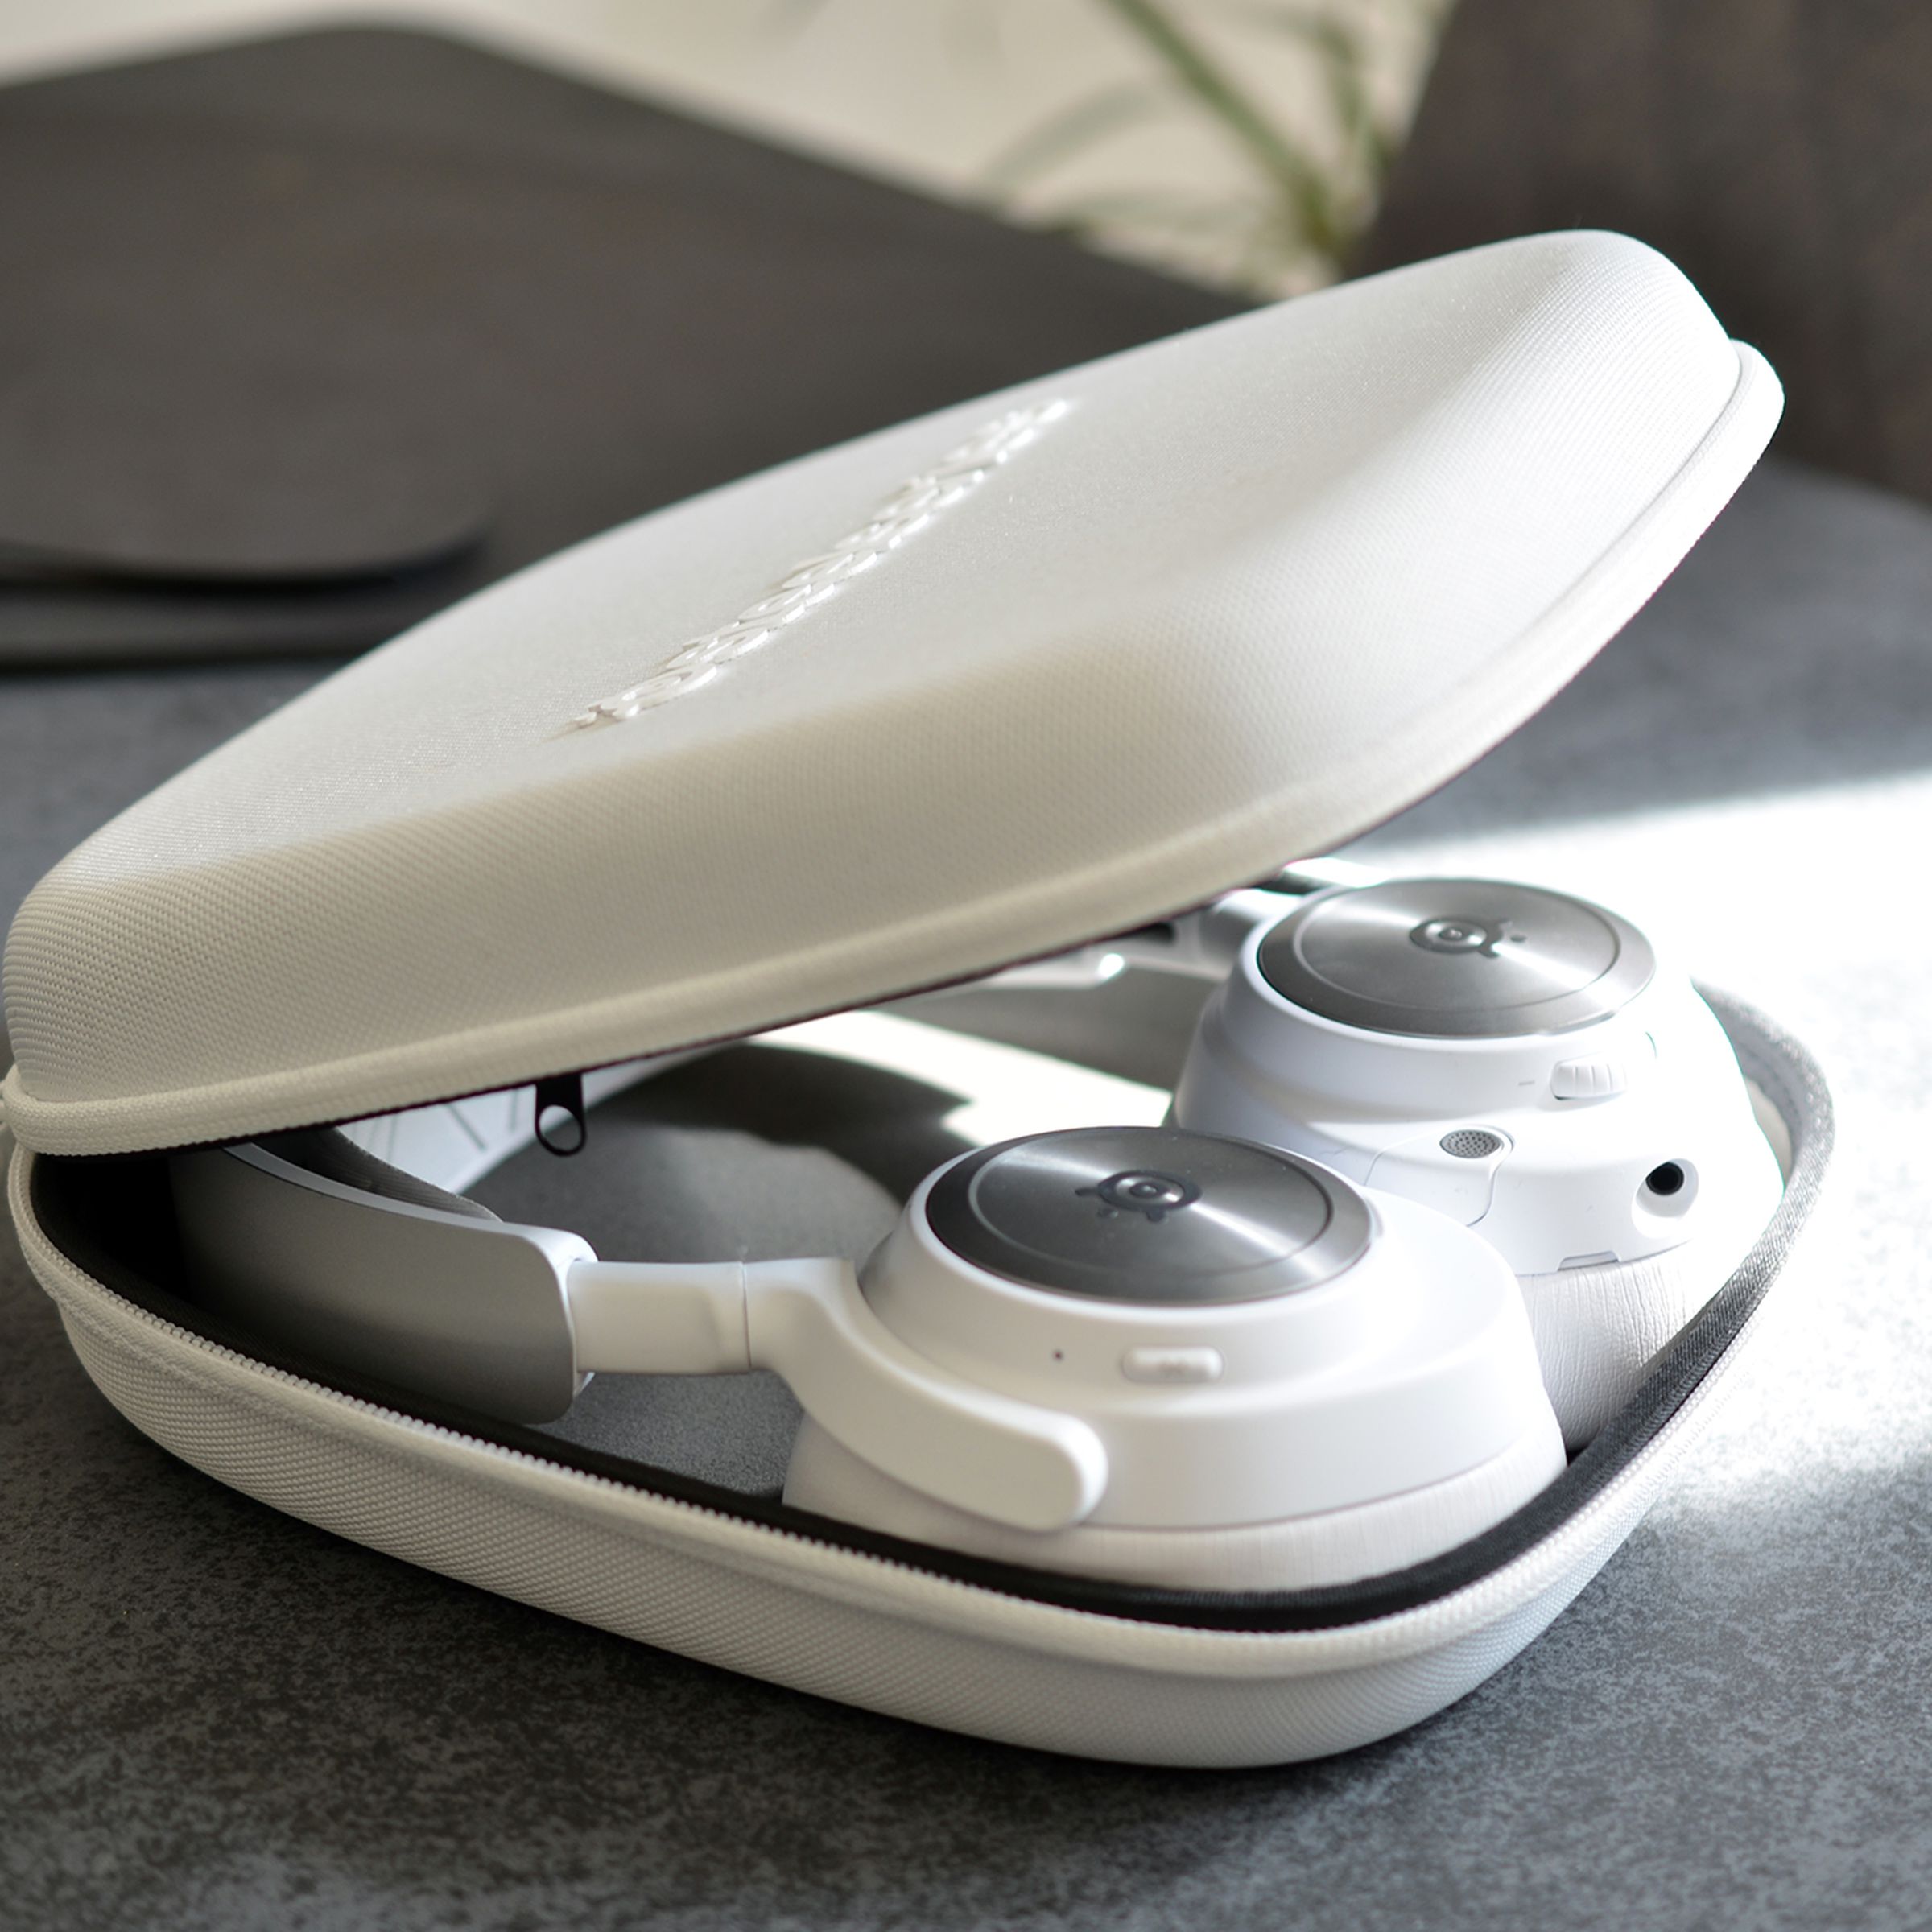 SteelSeries’ white Nova Pro headset